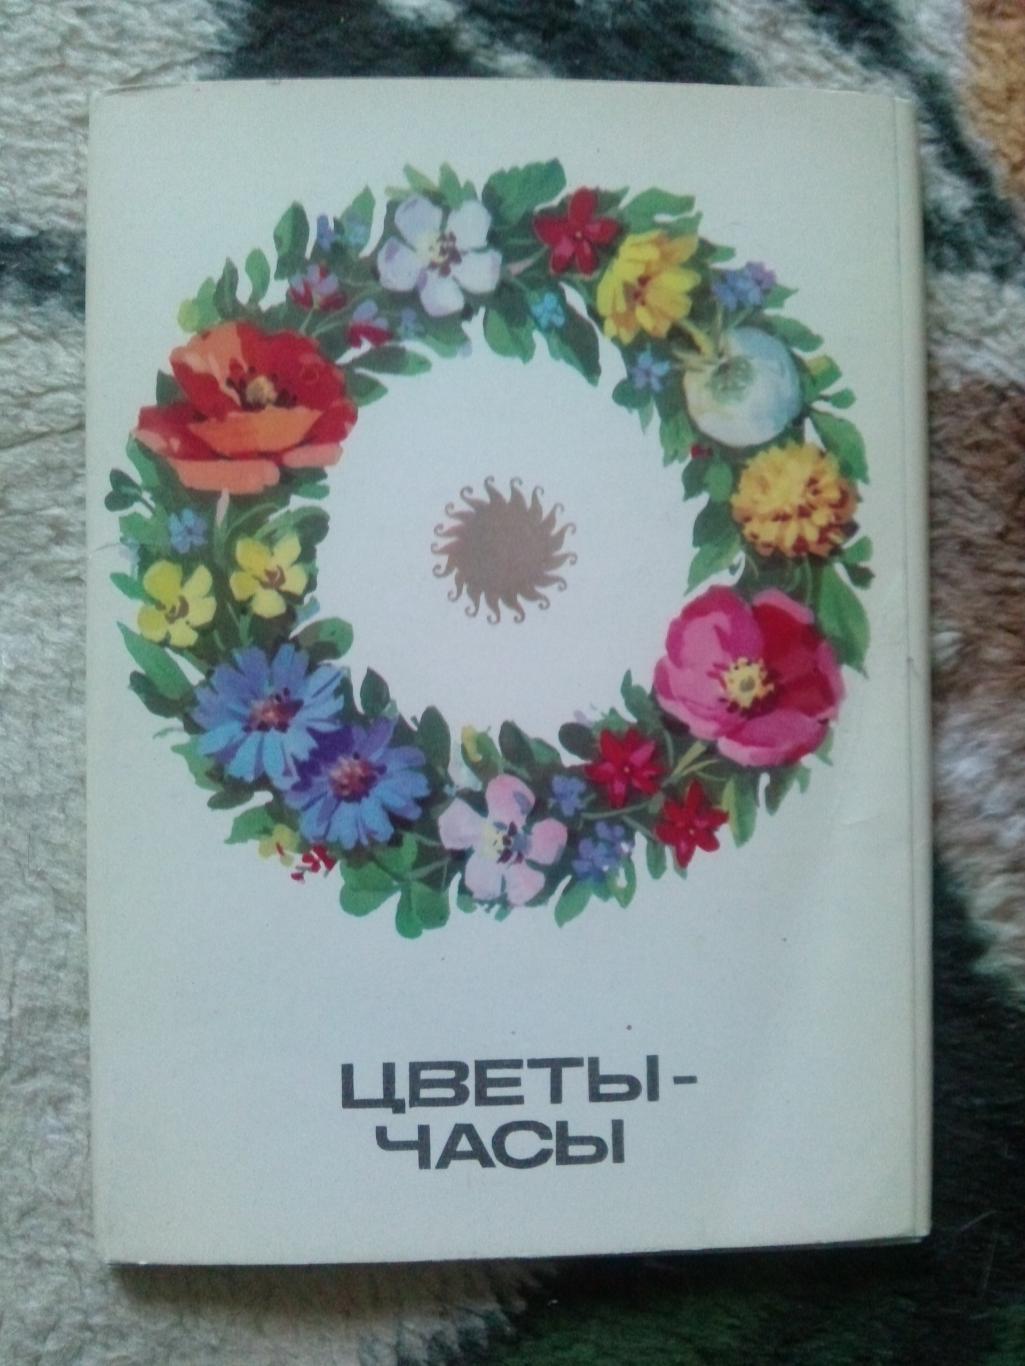 Цветы - часы 1980 г. полный набор - 16 открыток (чистые , в идеале) Растения